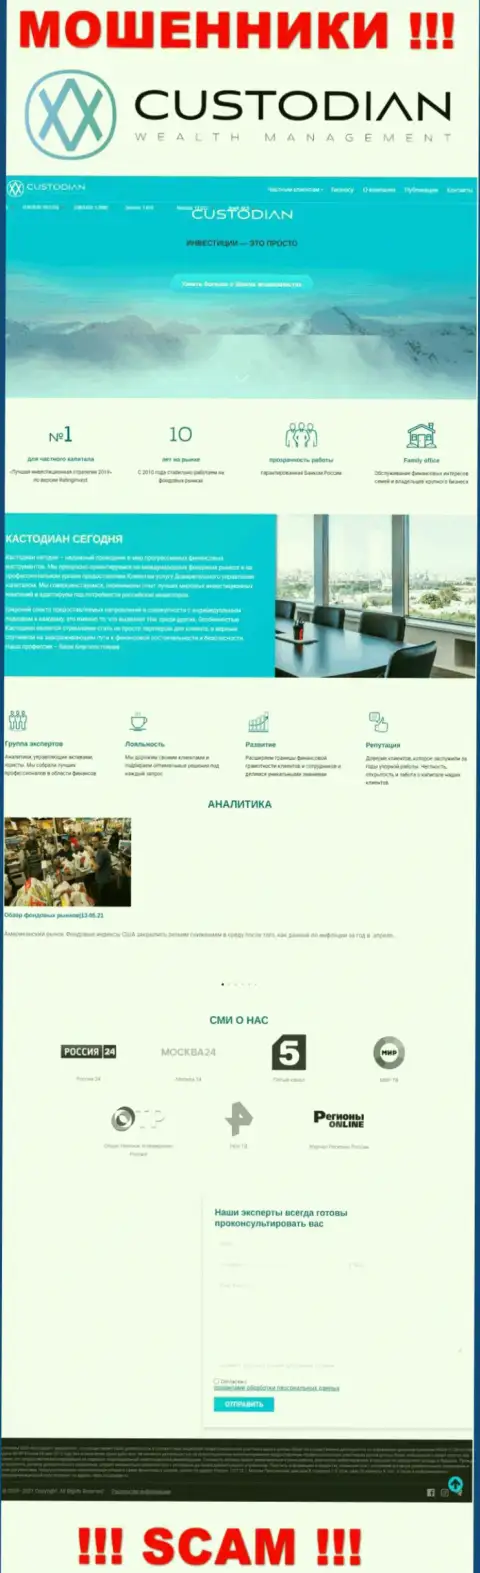 Скриншот информационного портала мошеннической конторы Кустодиан